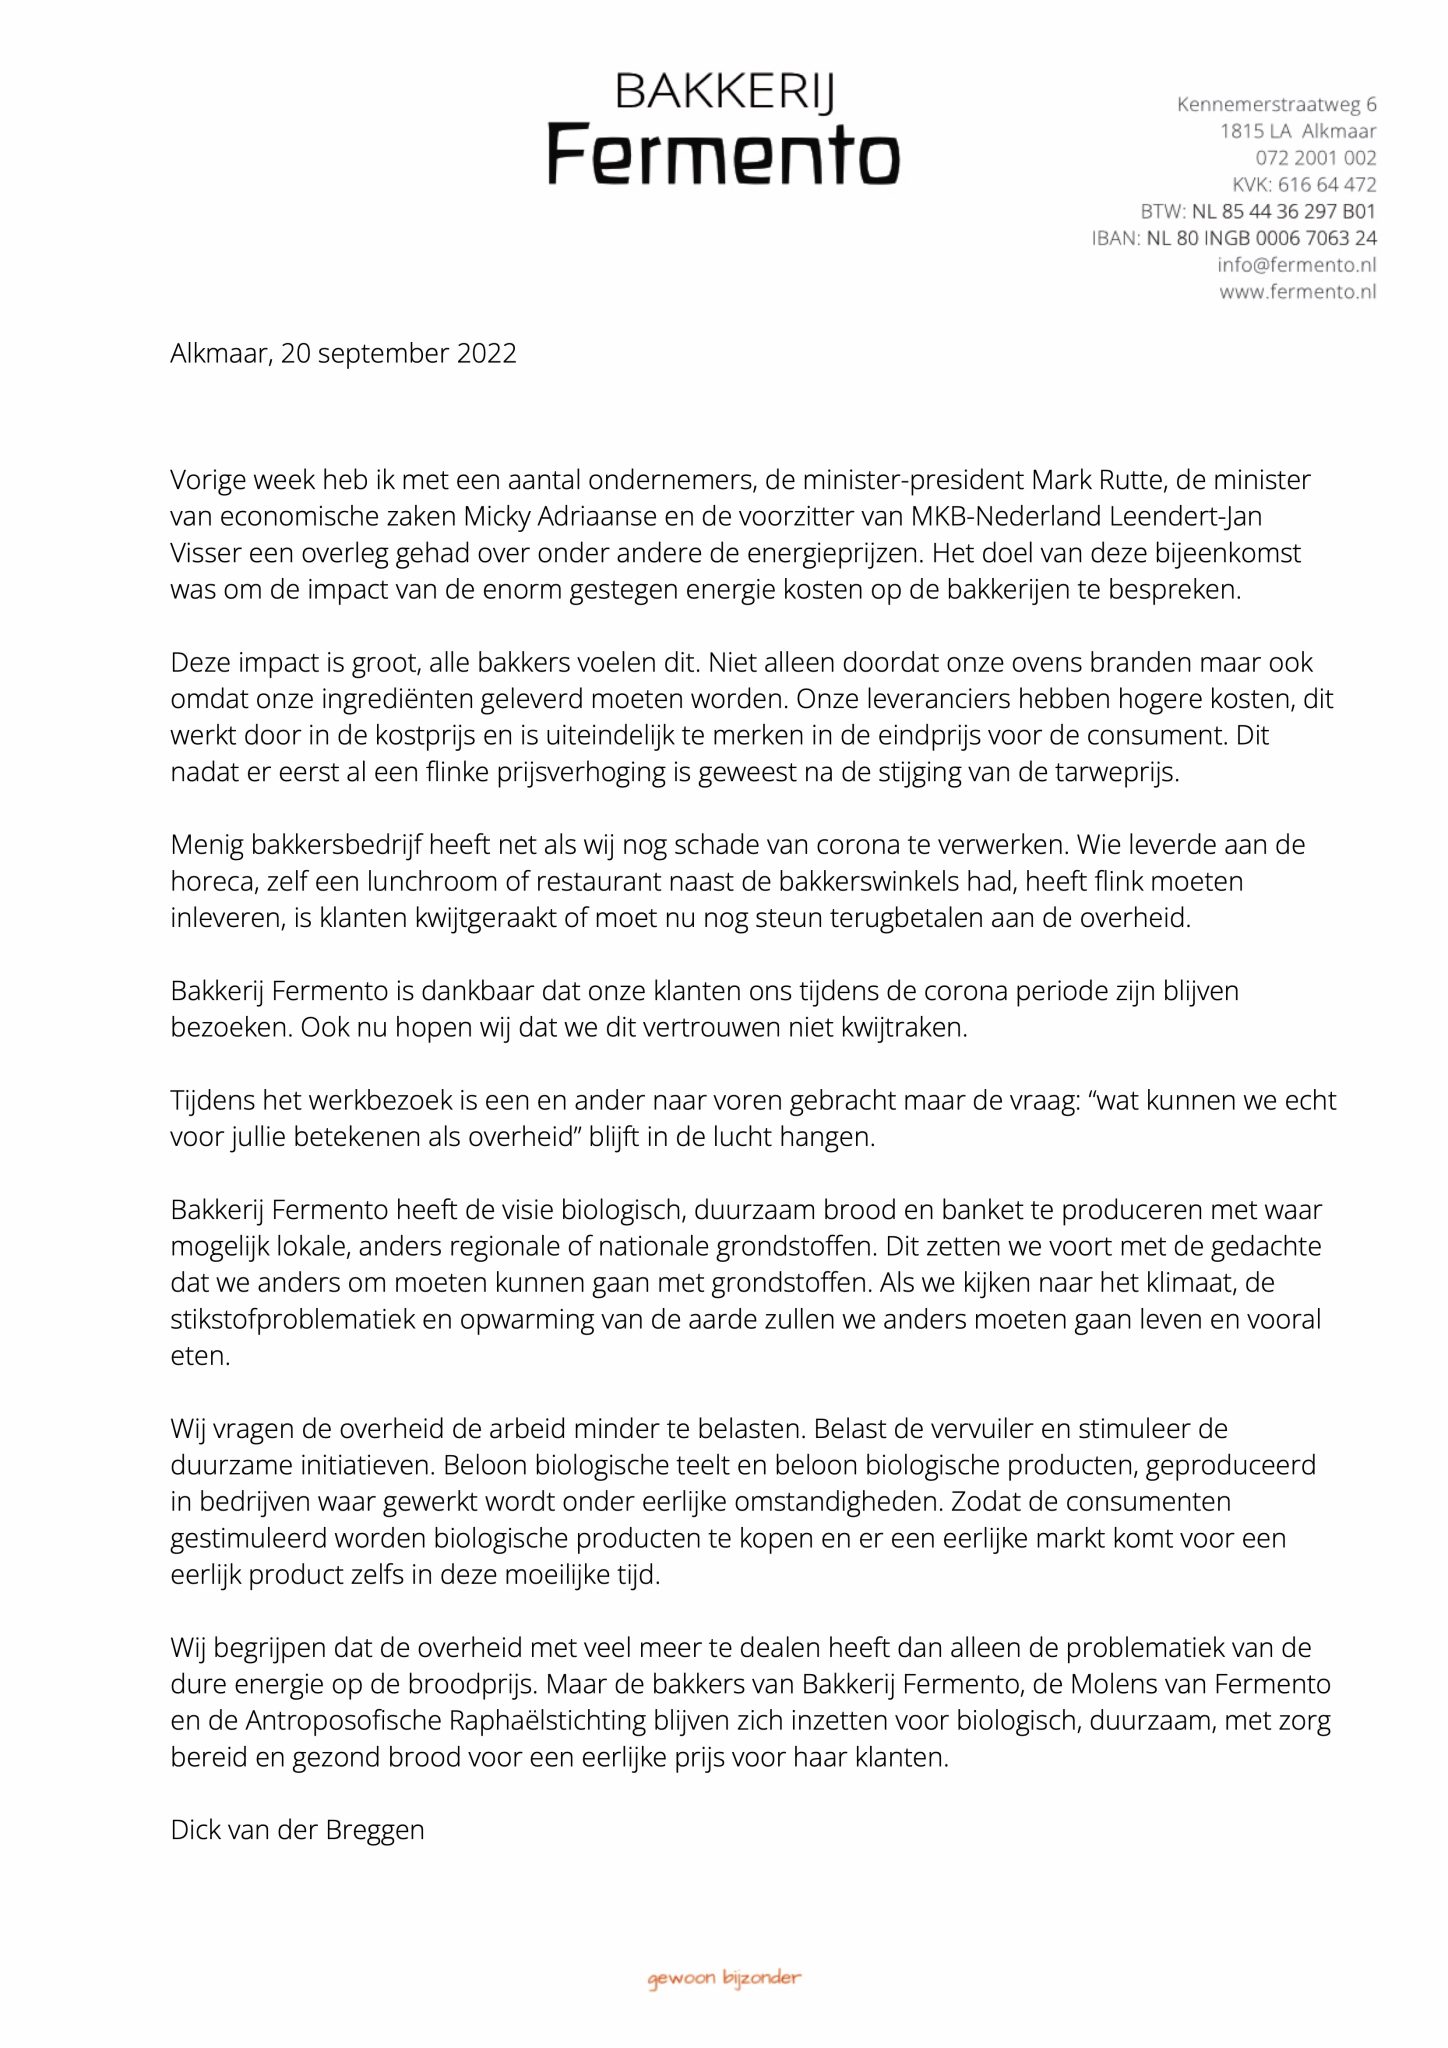 een brief opgesteld door dick van der Breggen over de impact van de energie crisis op de consument van de bakkerijen en de biologische voedselketen.